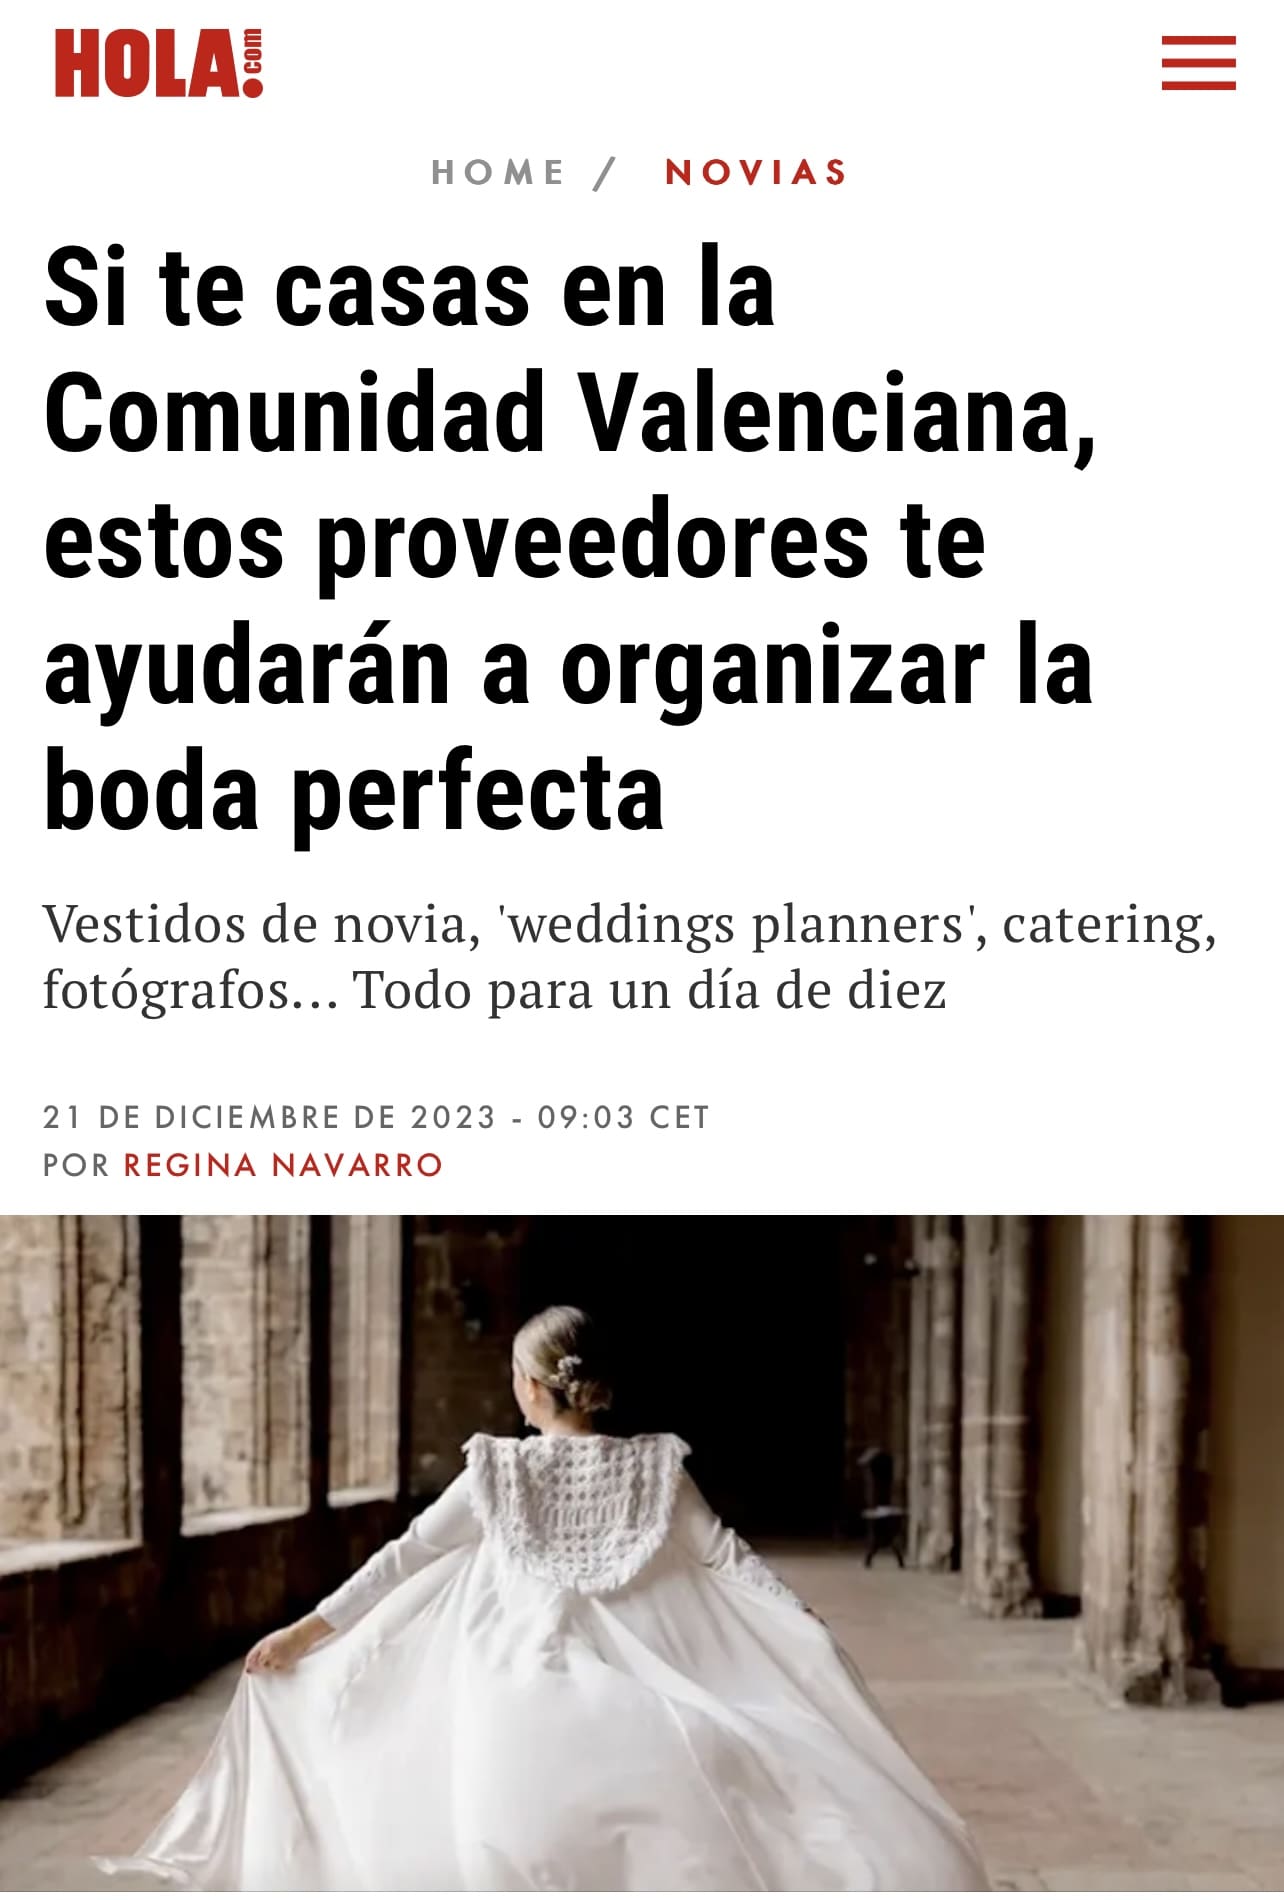 Cabecera de artículo en 'Hola' sobre bodas en la Comunidad Valenciana, mencionando a Bouclé Weddings como proveedor destacado.